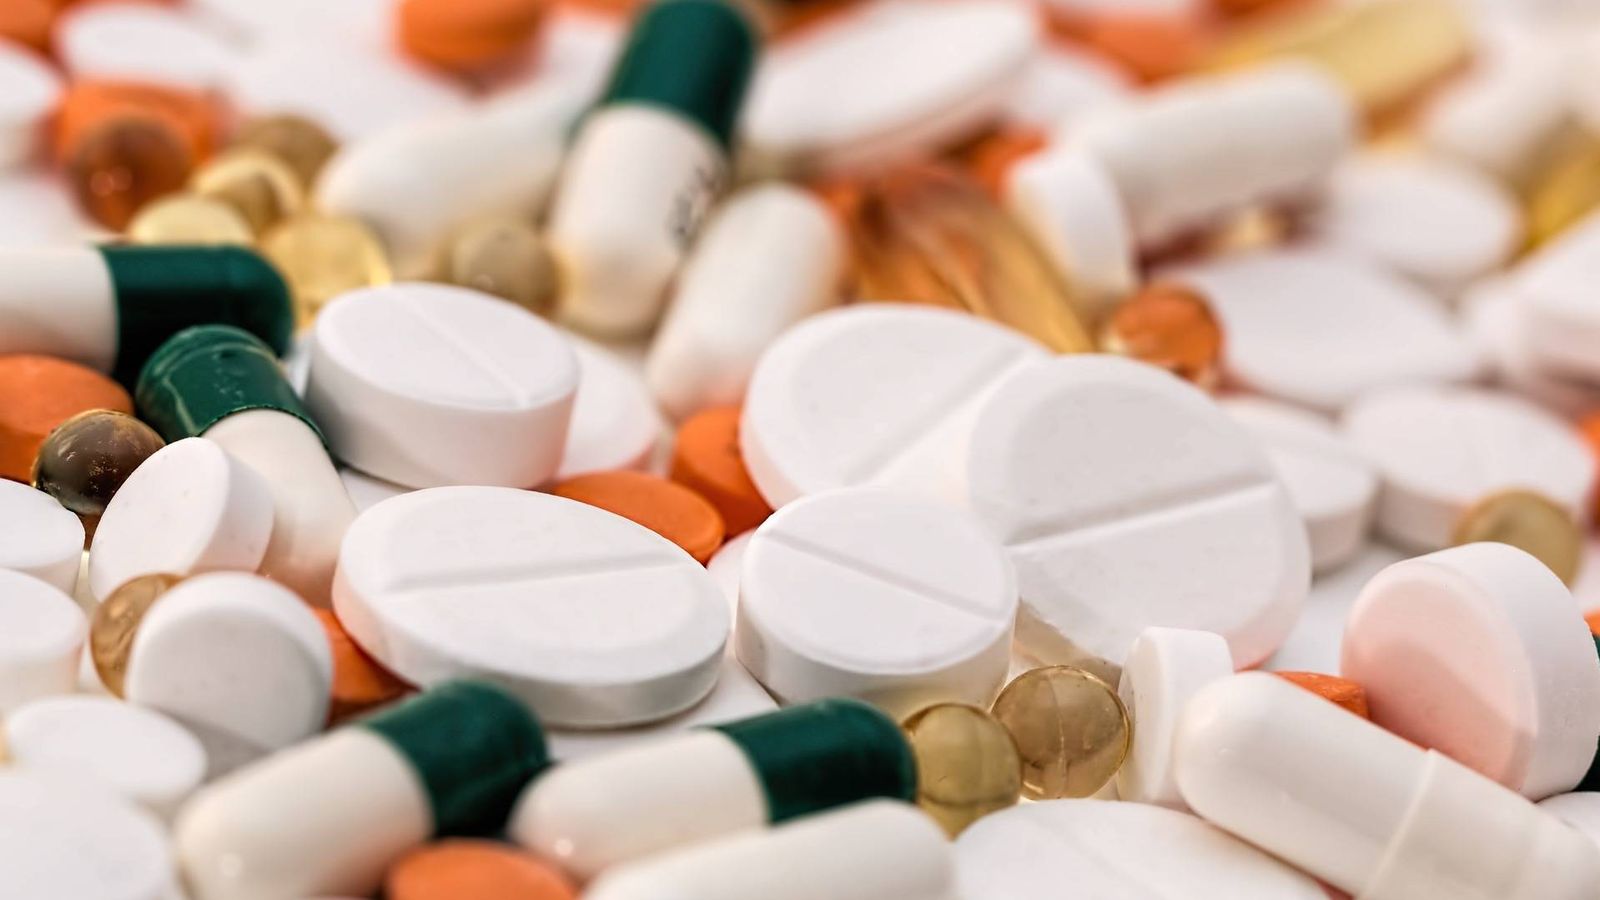 Foto: medicamentos farmacos Imagen de Steve Buissinne en Pixabay.